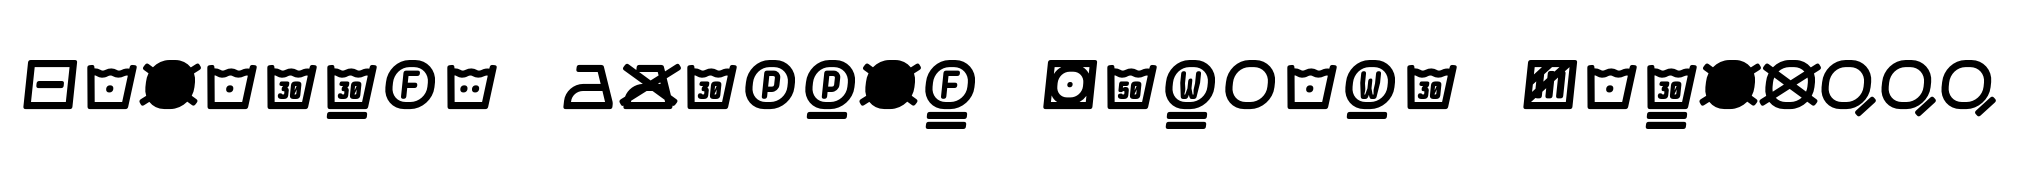 Monostep Washing Symbols Rounded RegularItalic image